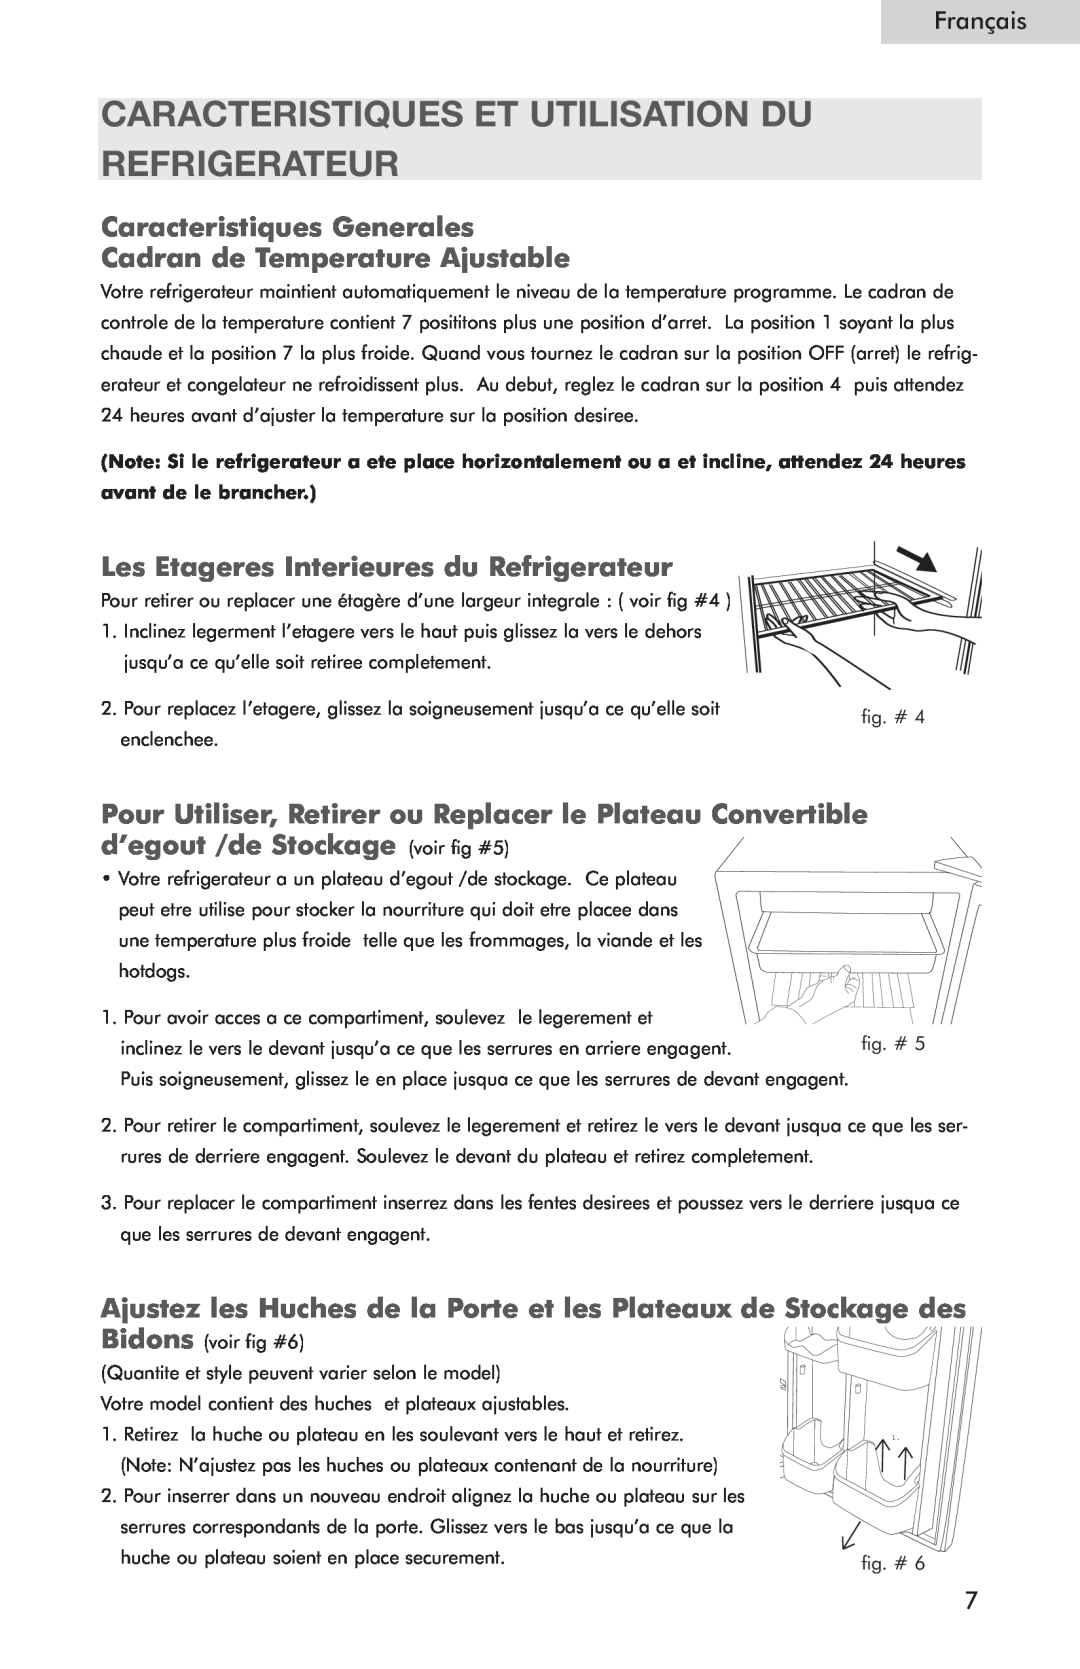 Haier HSP05WNC Caracteristiques Et Utilisation Du Refrigerateur, Les Etageres Interieures du Refrigerateur, Français 